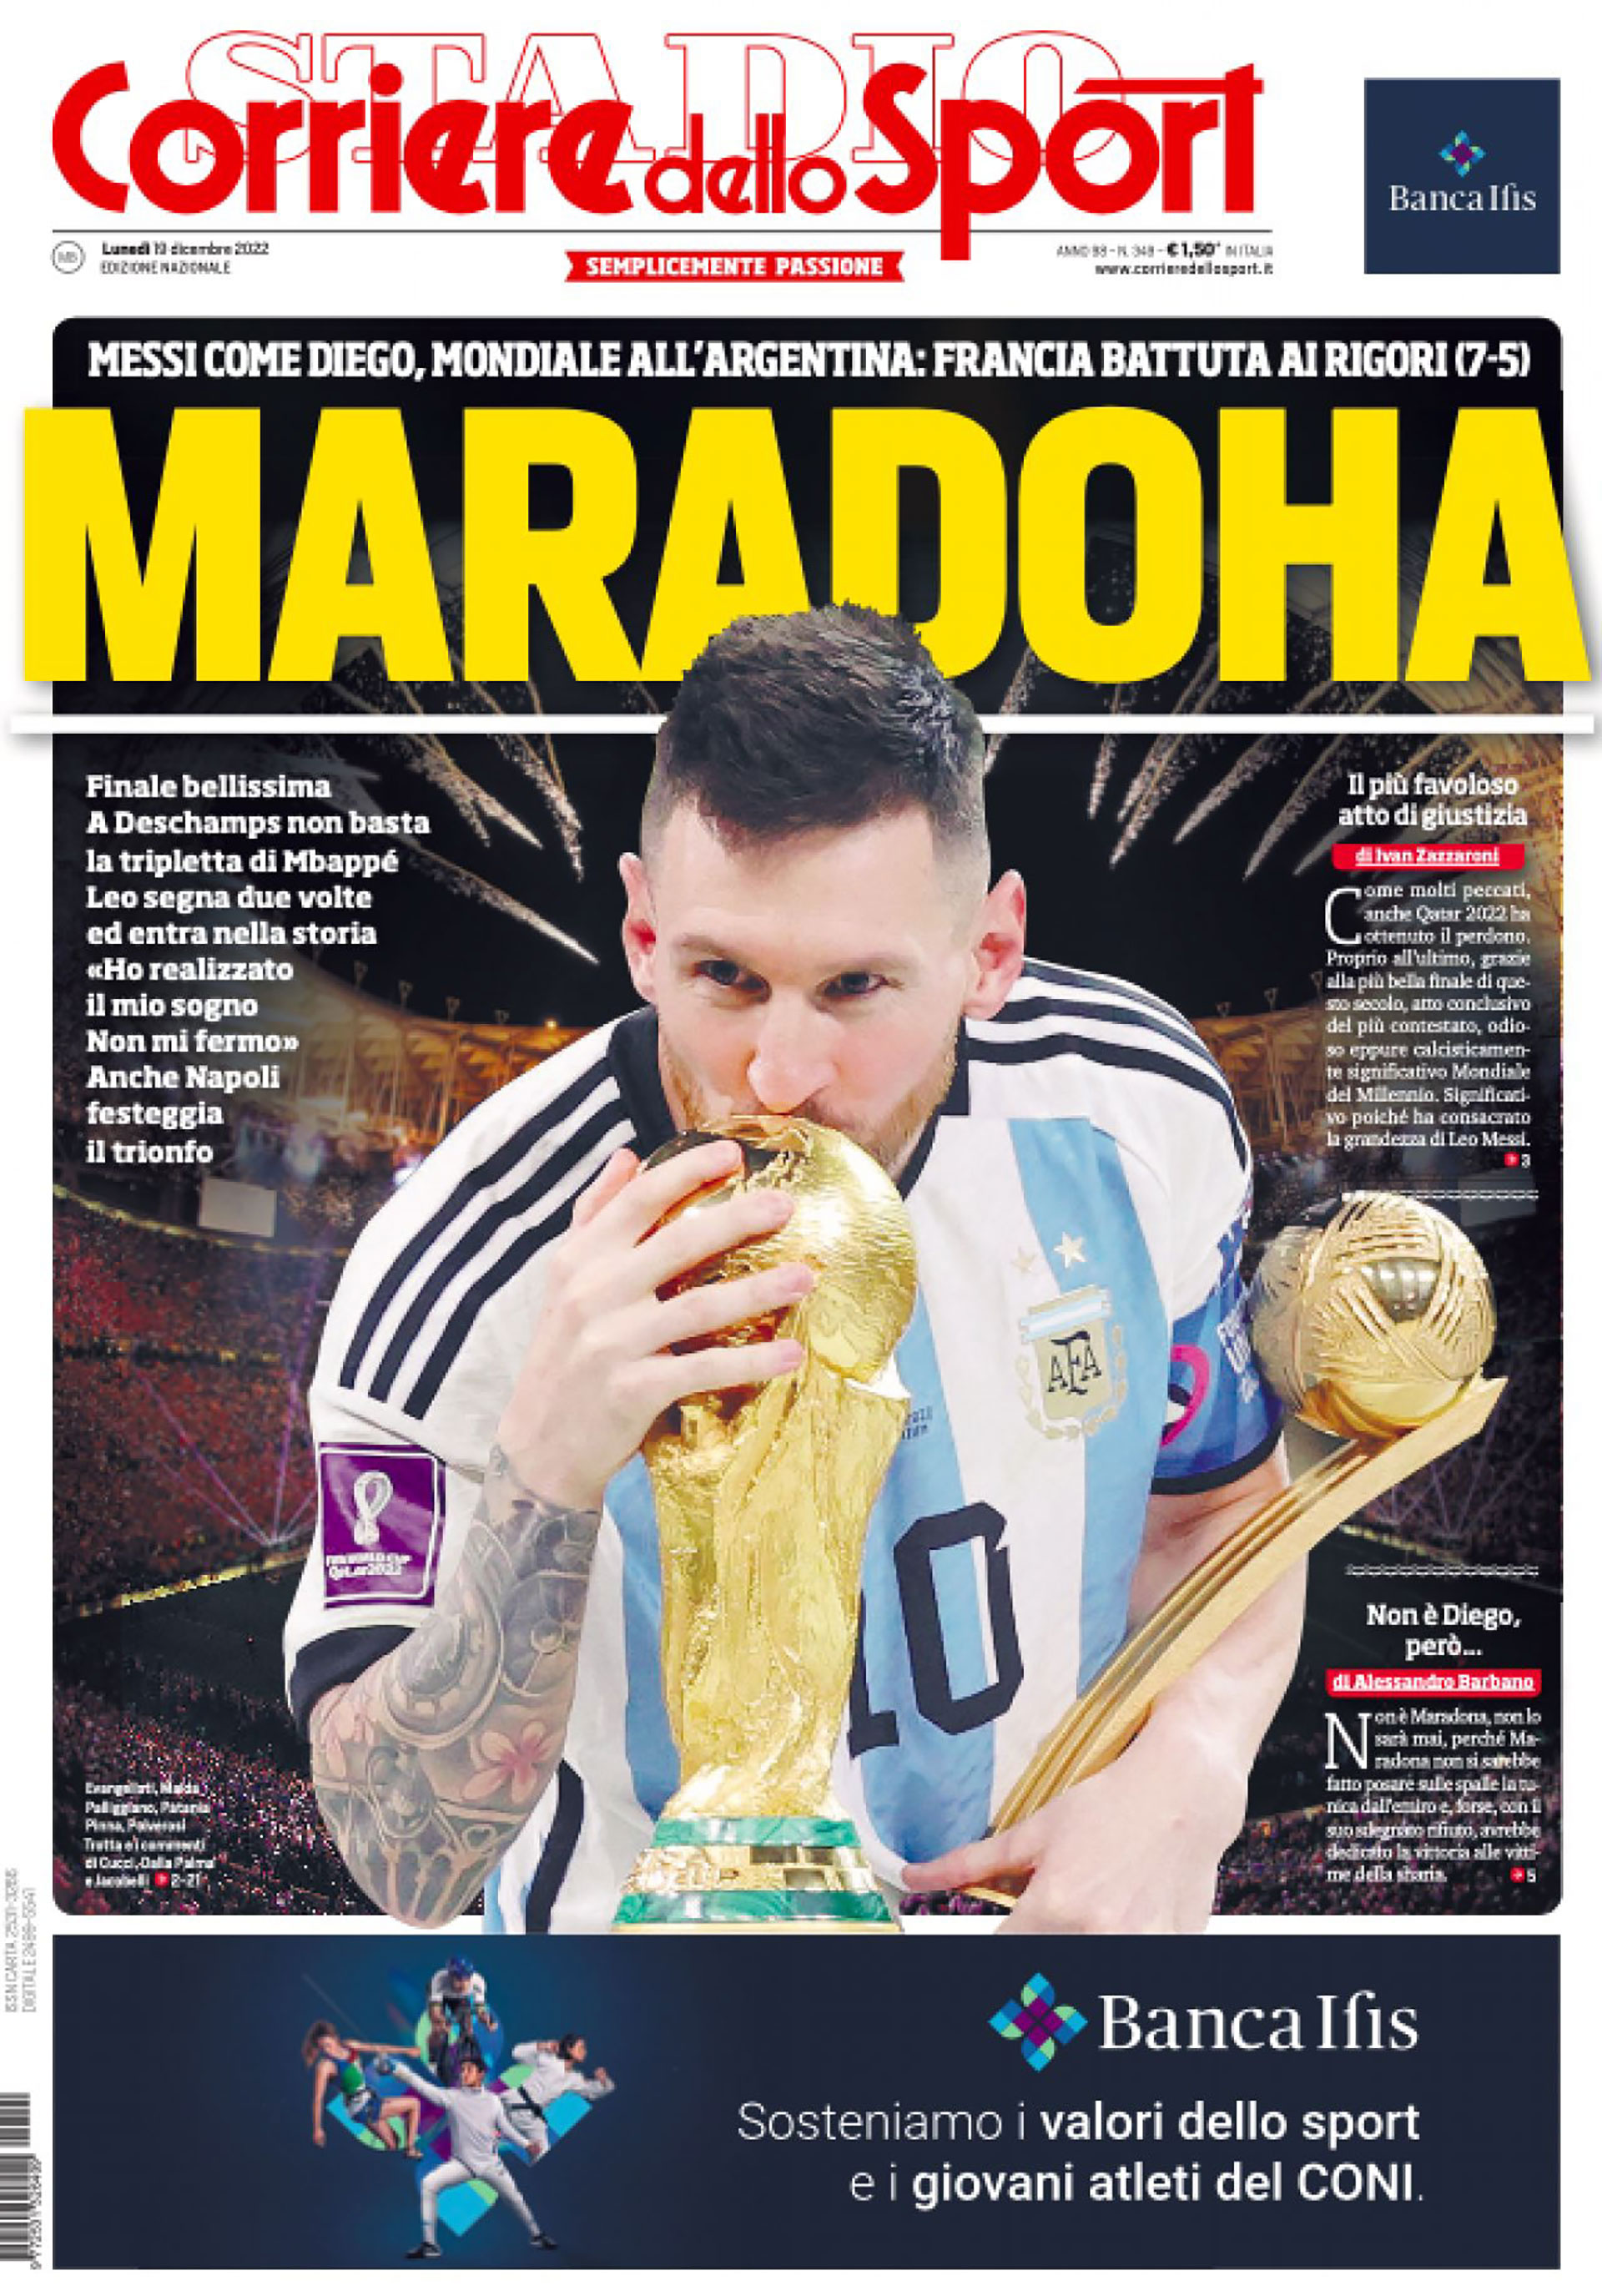 El vínculo Messi-Maradona, eje de la portada de Corriere dello Sport